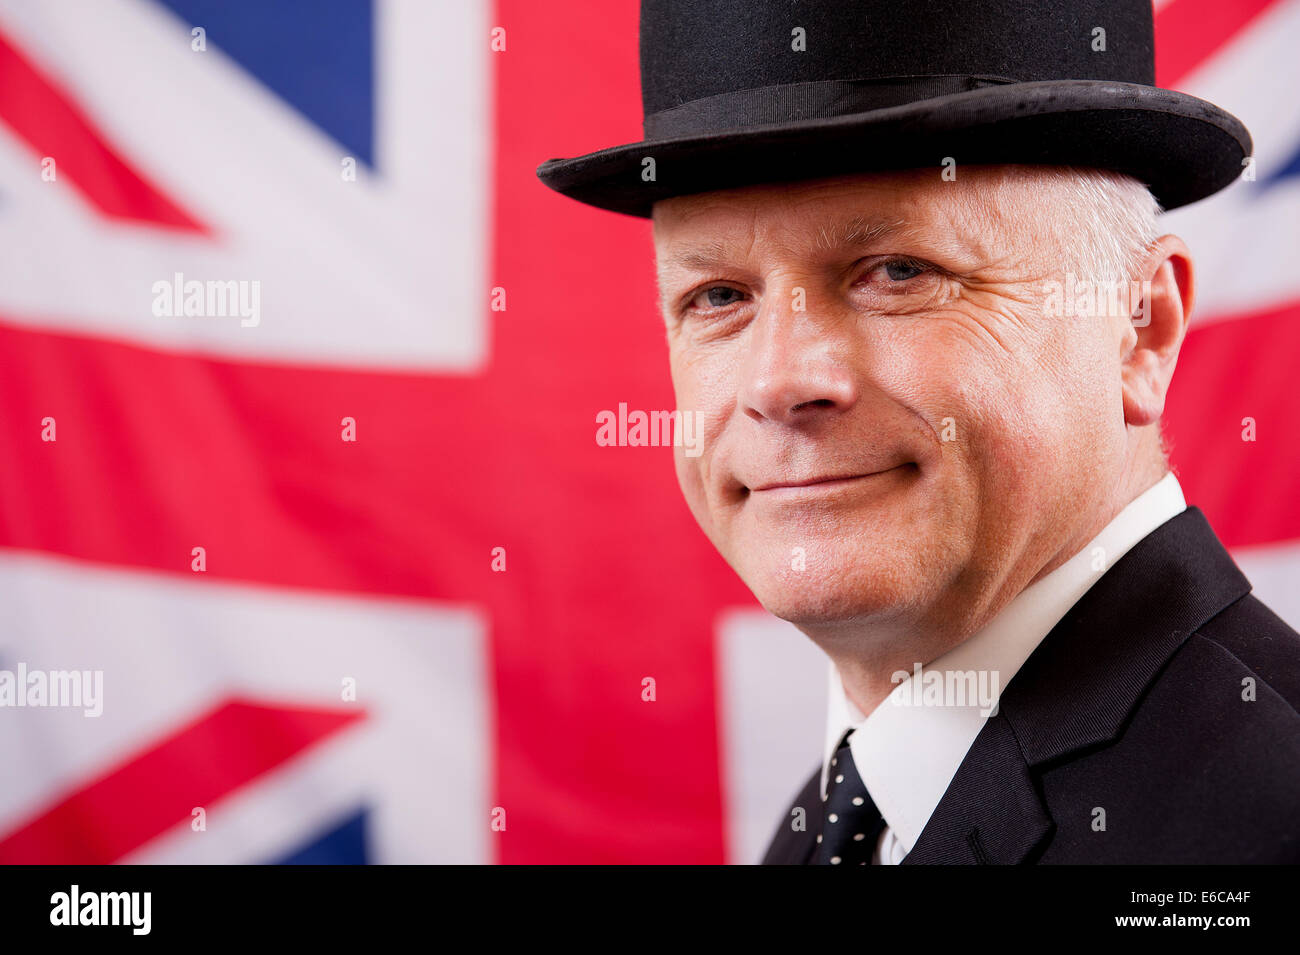 Geschäftsmann, tragen traditionelle britische Melone, und stand vor der Union Jack Flagge des Vereinigten Königreichs. Stockfoto